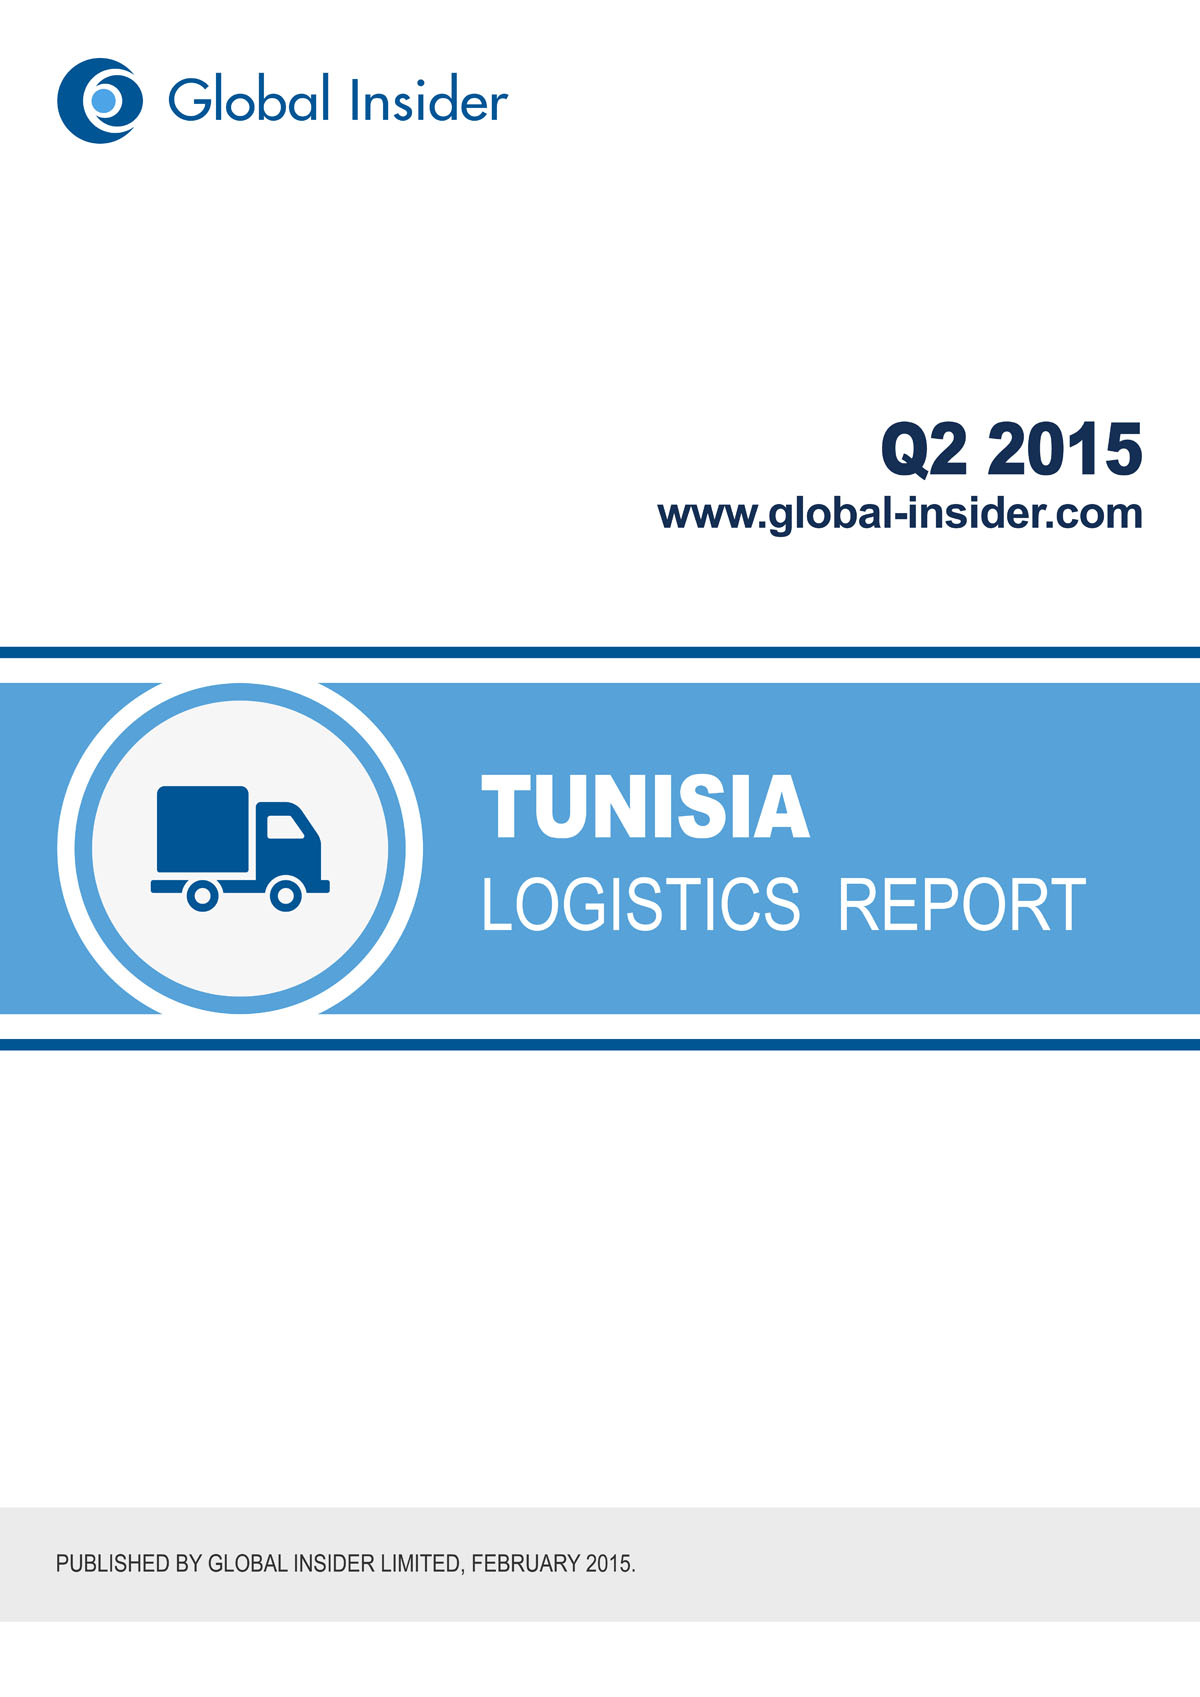 Tunisia Logistics Report